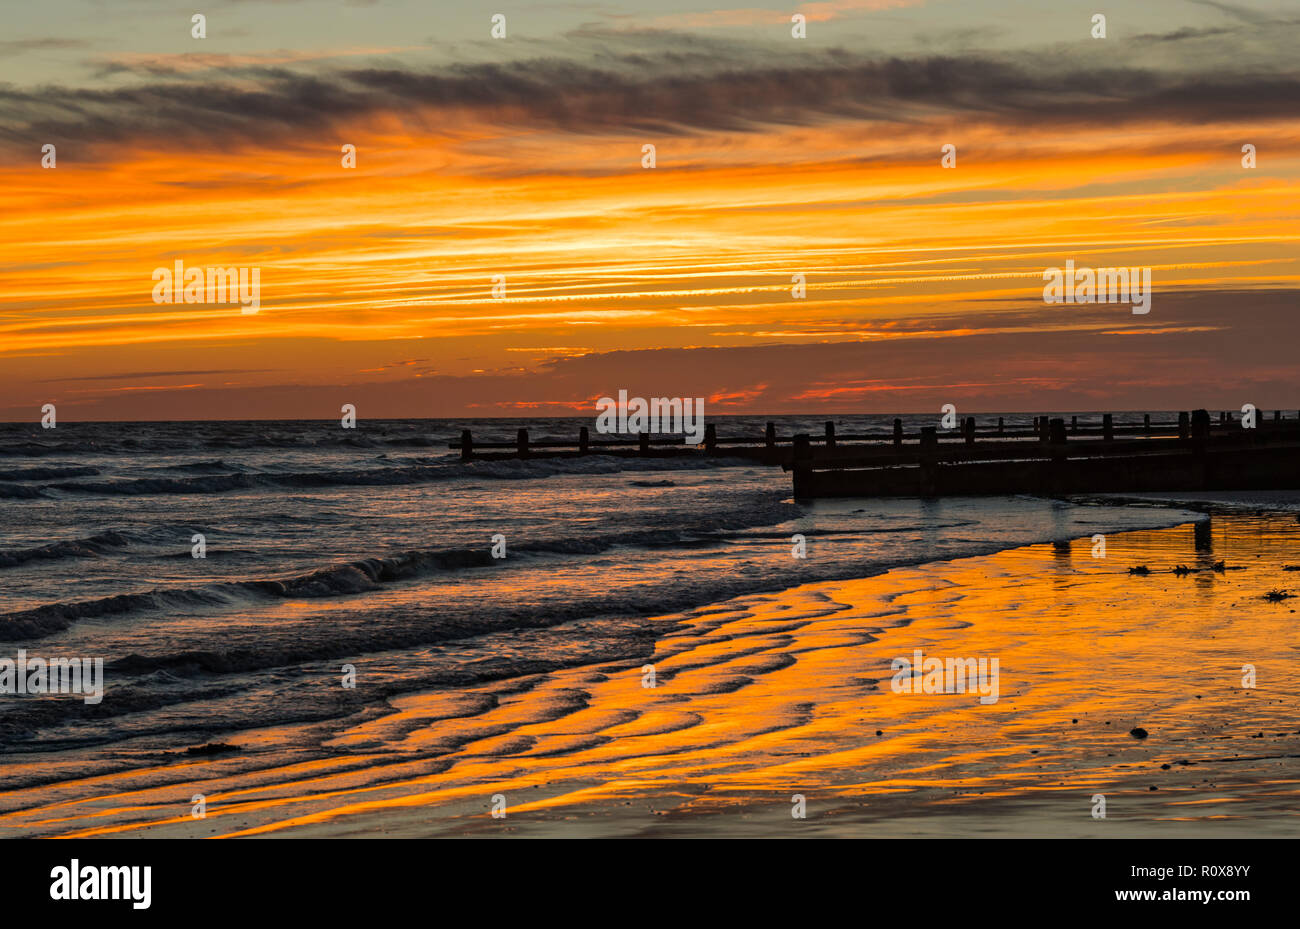 Abendhimmel nach Sonnenuntergang mit orangen und roten Himmel im Sand ridges reflektiert durch das Meer in West Sussex, UK. Stockfoto